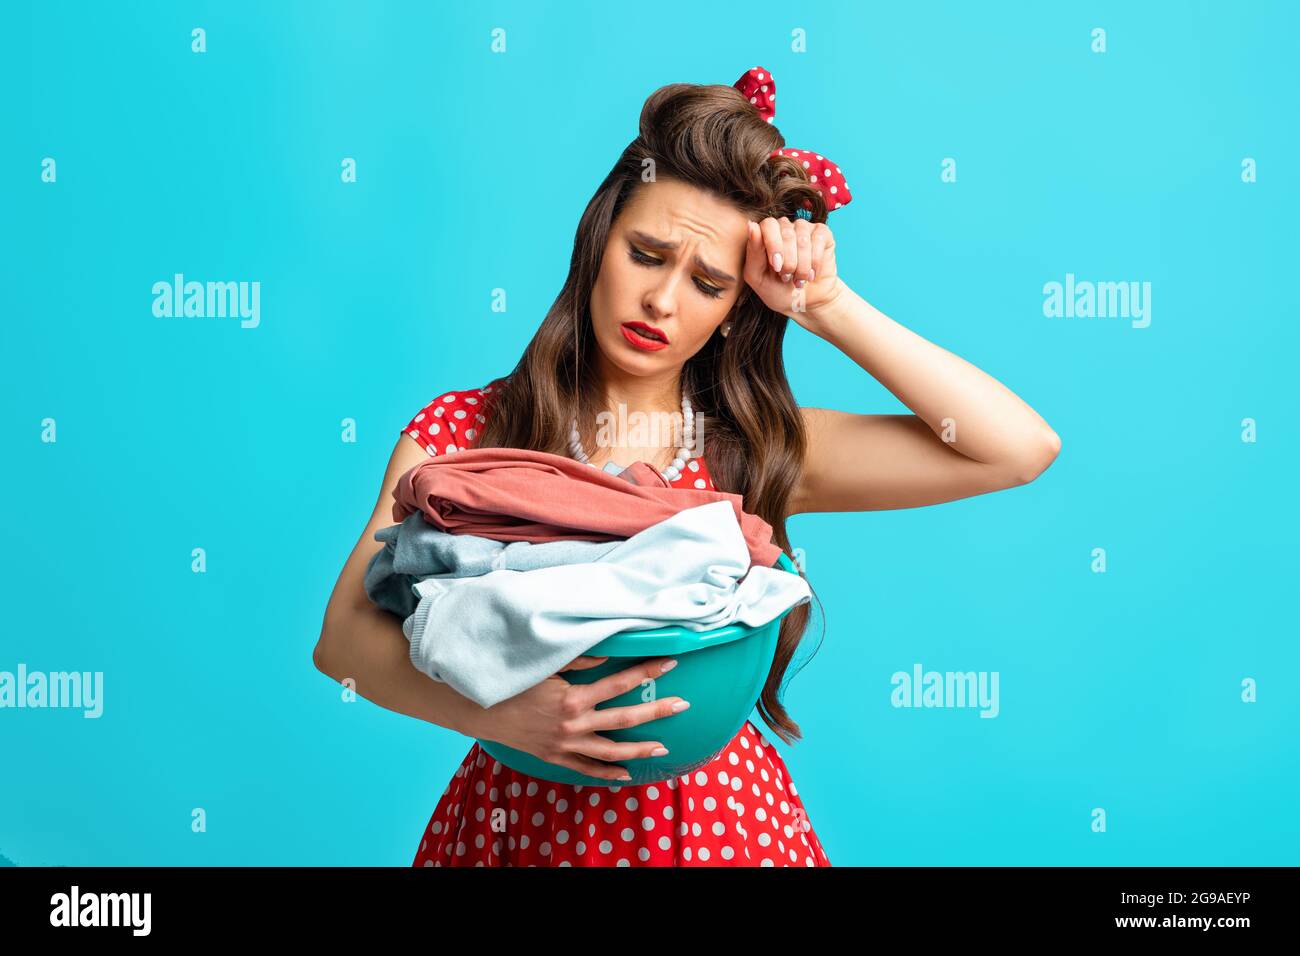 Triste femme épuisée pinup dans une tenue rétro tenant des vêtements pour laver ou repasser sur fond bleu studio Banque D'Images